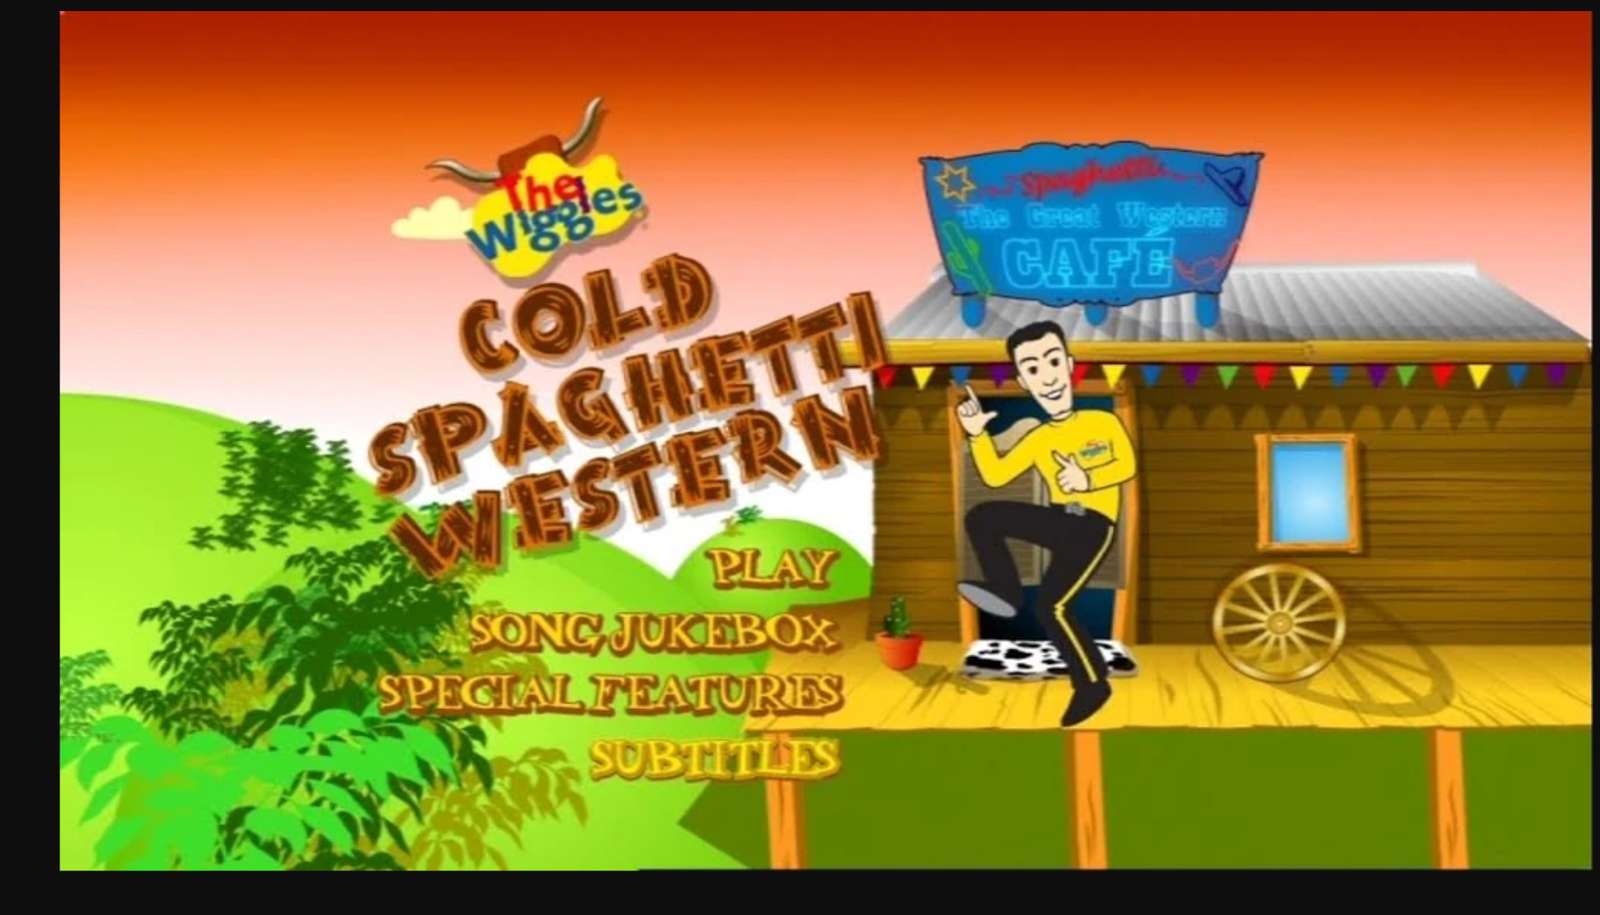 Cold Spaghetti Western DVD Menu Wiggles 2004 онлайн пъзел